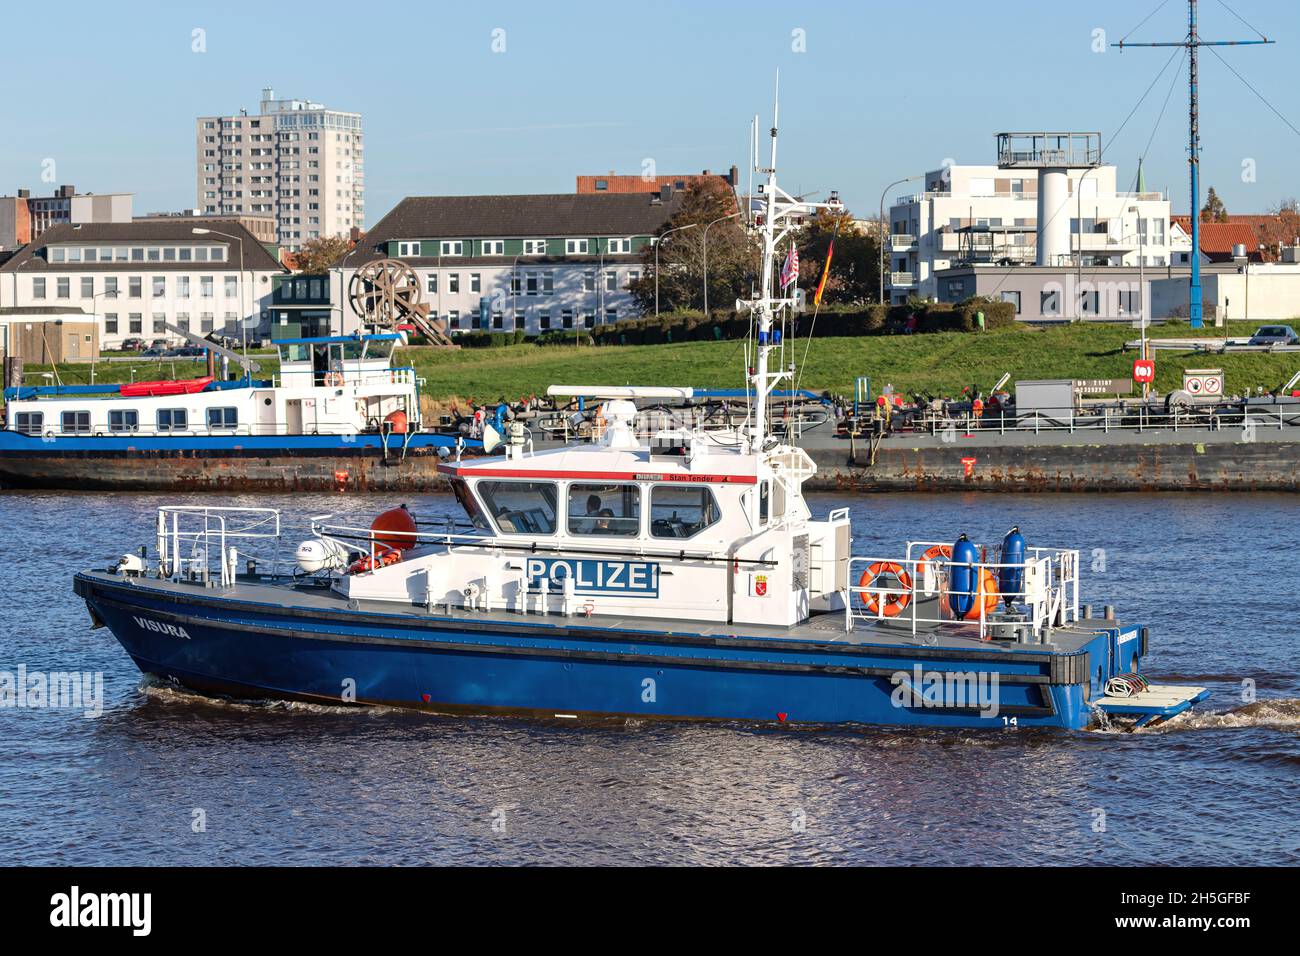 Bremer Polizeiküsten-Patrouillenboot VISURA im Hafen von Bremerhaven Stockfoto